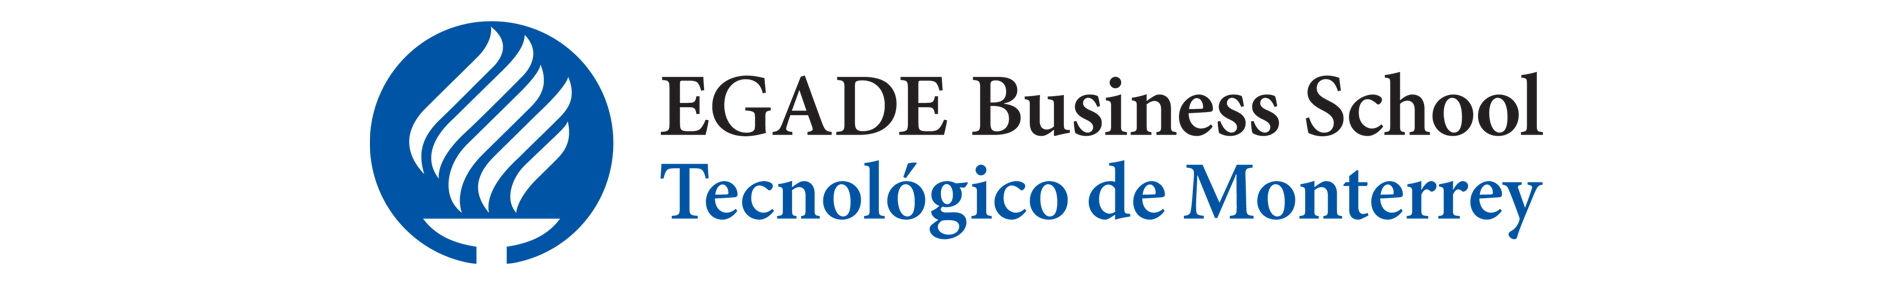 Logo-egade-3